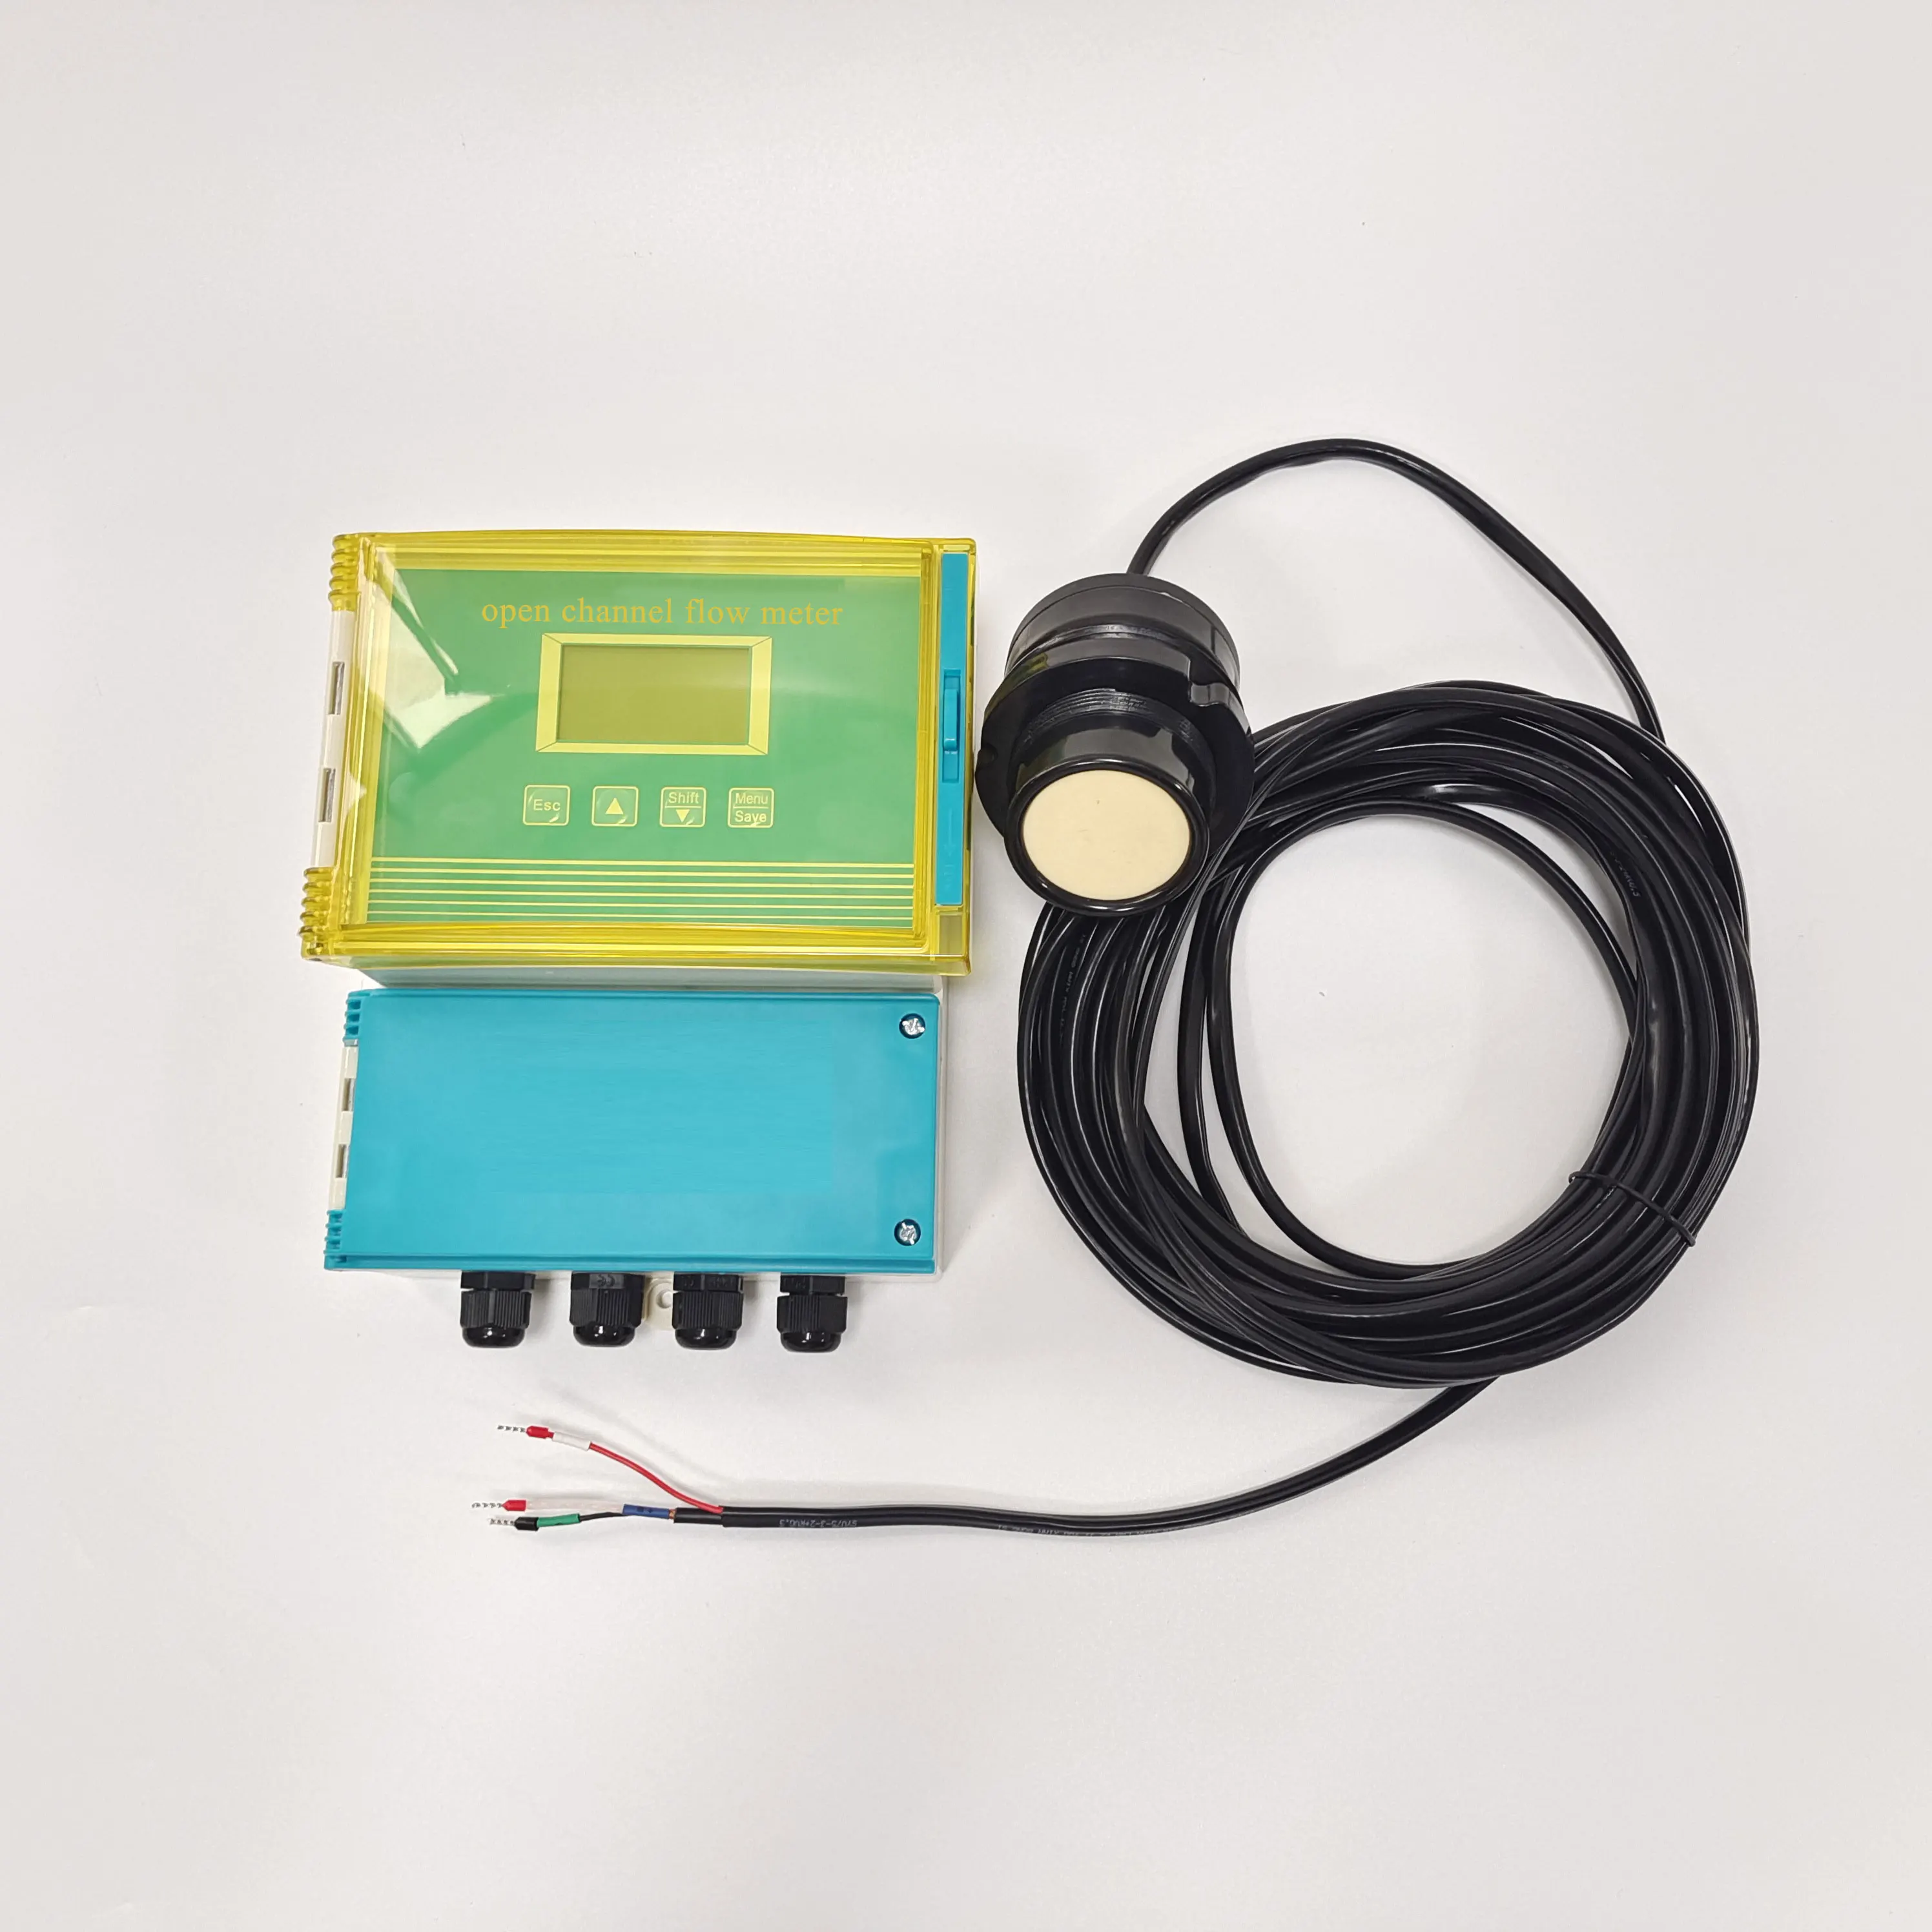 

RS485 River flowmeter ultrasonic open channel level sensor flow meter transmitter